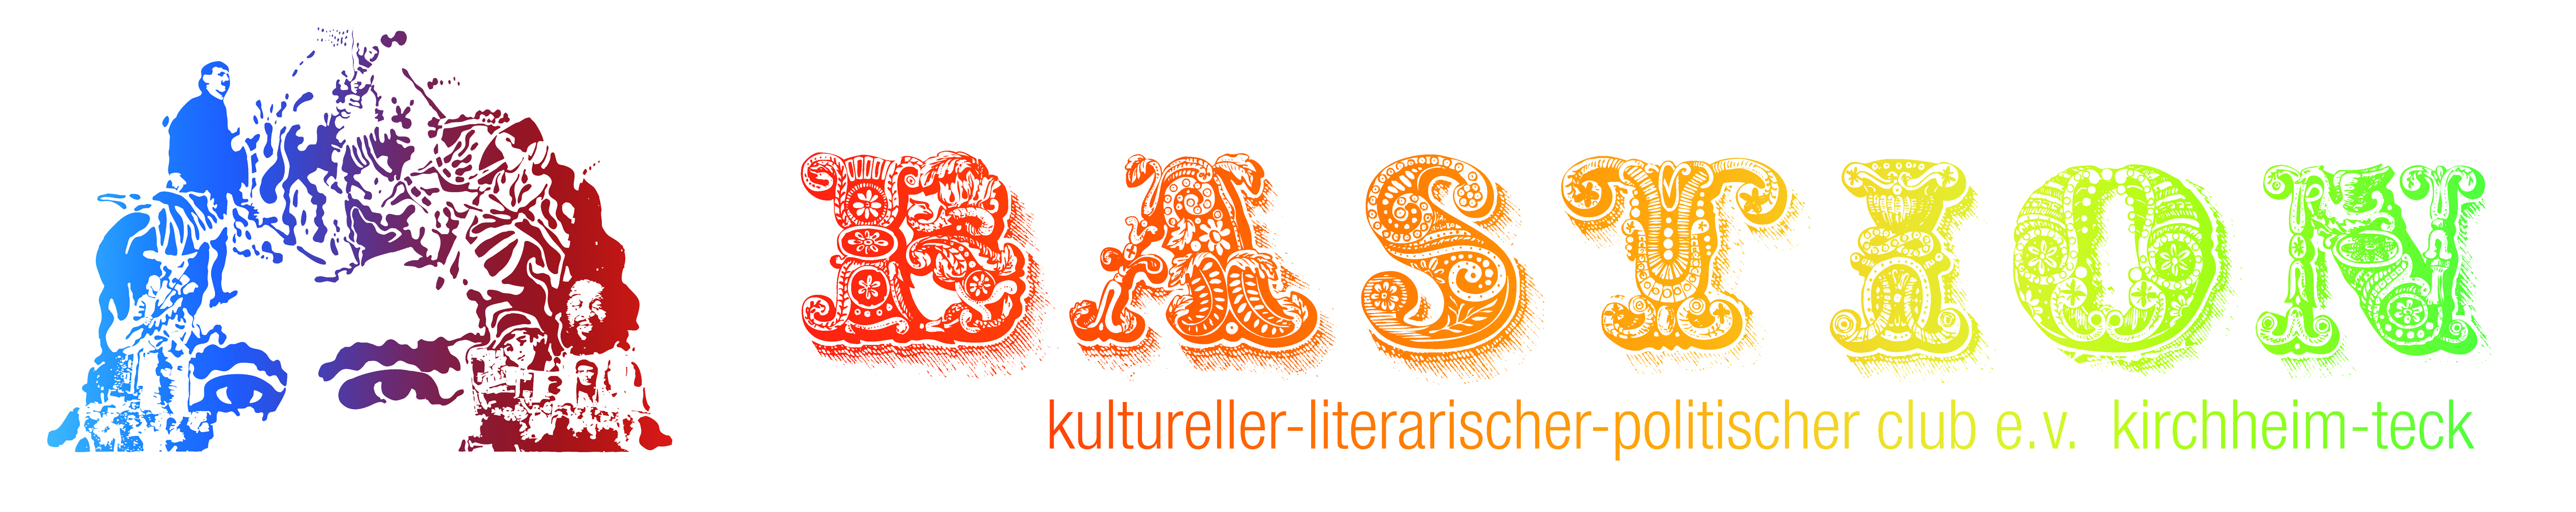 Logo-Bastion Kirchheim